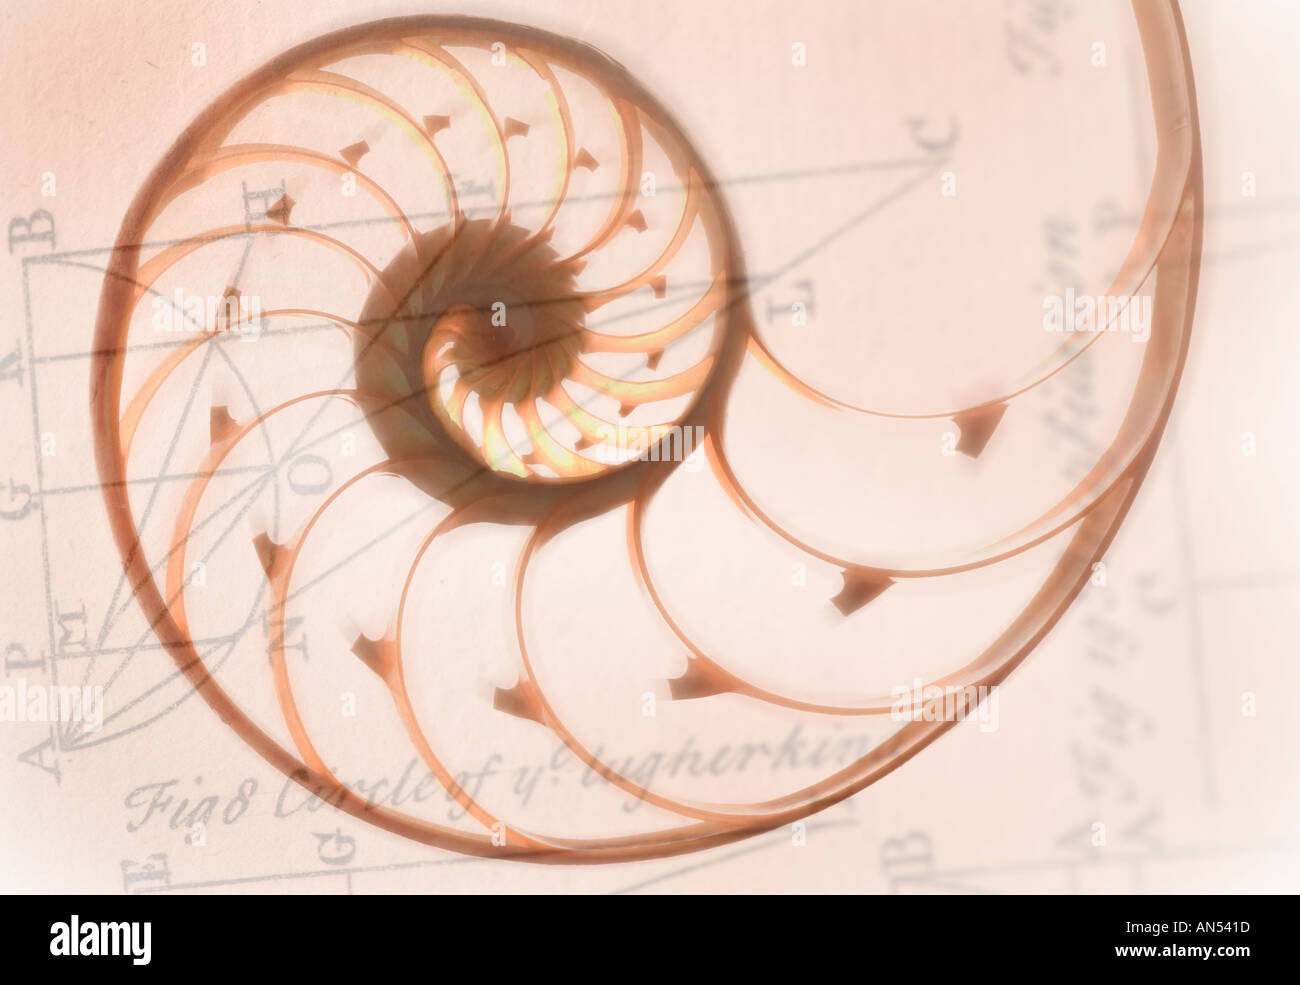 Einen spiralförmigen Meeresschnecke Stockfoto